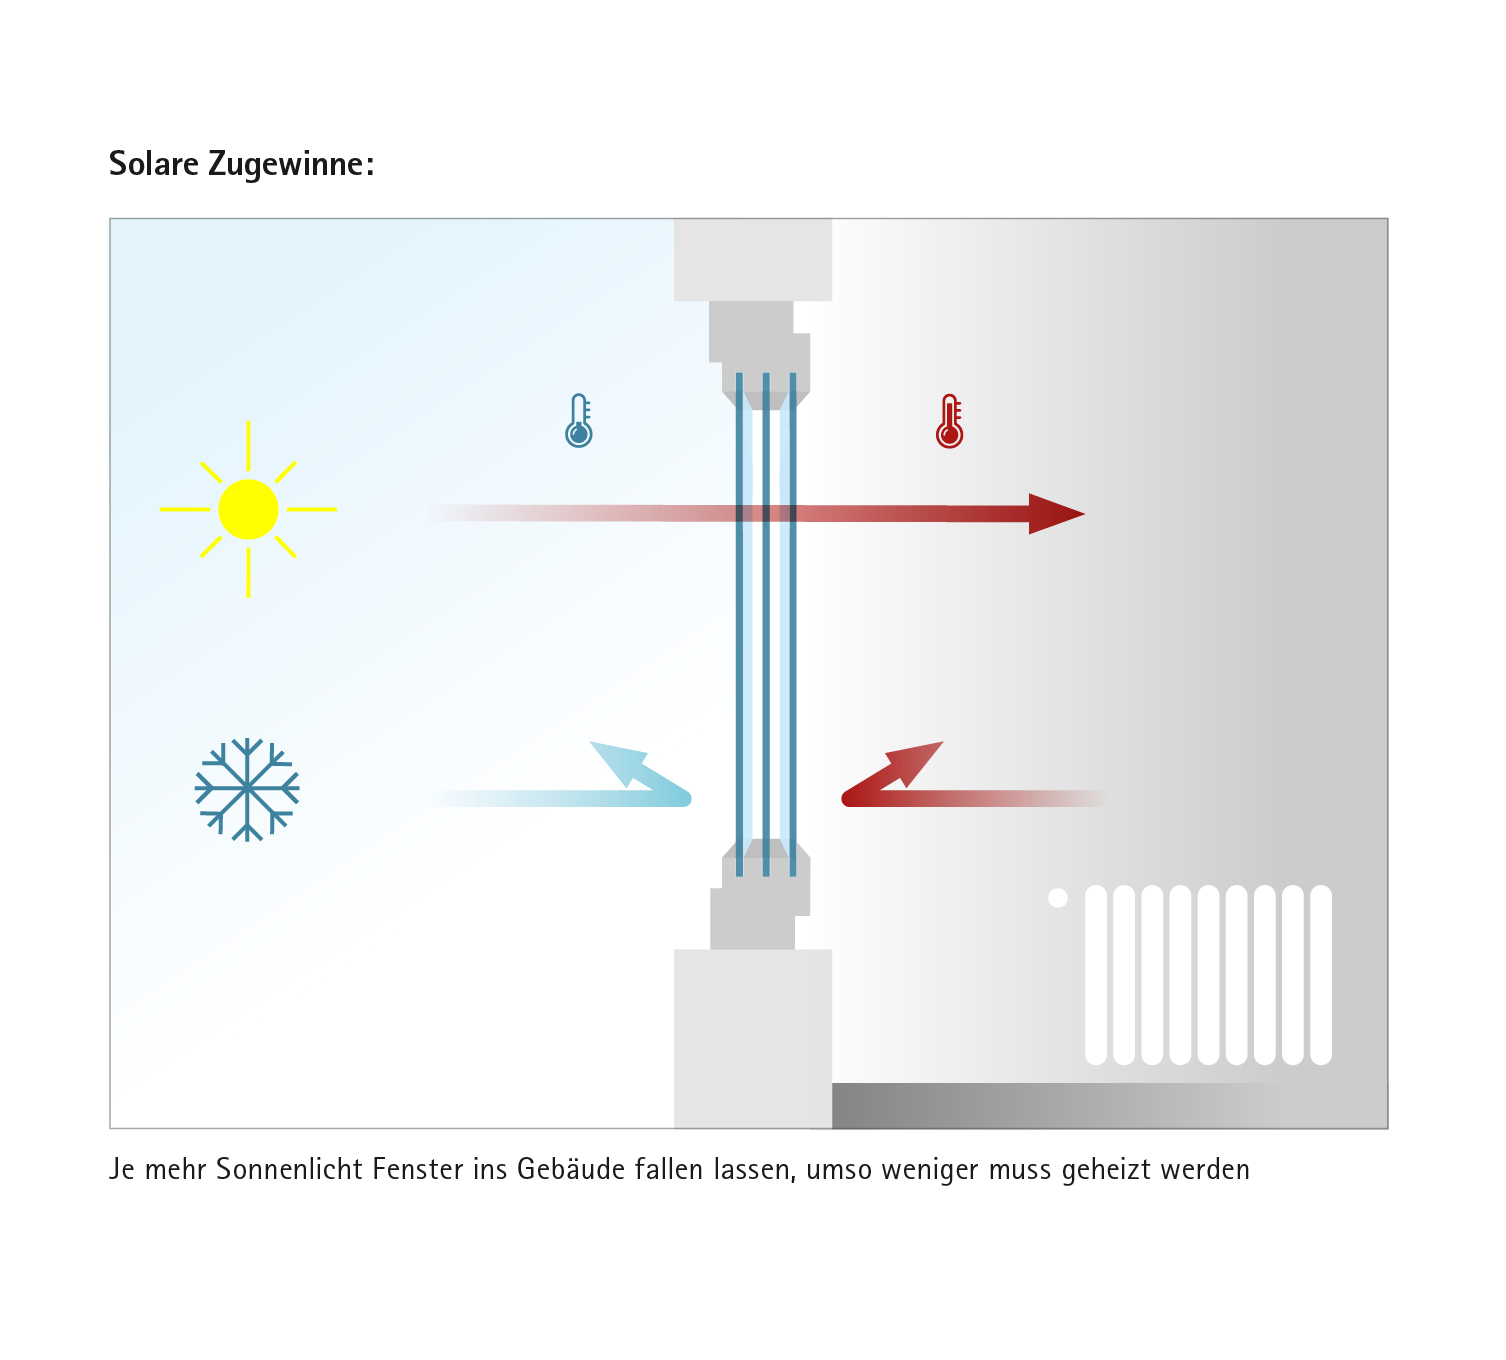 Winst van zonne-energie: moderne ramen laten zonnestraling binnen en verminderen tegelijkertijd het verlies van kostbare thermische energie.